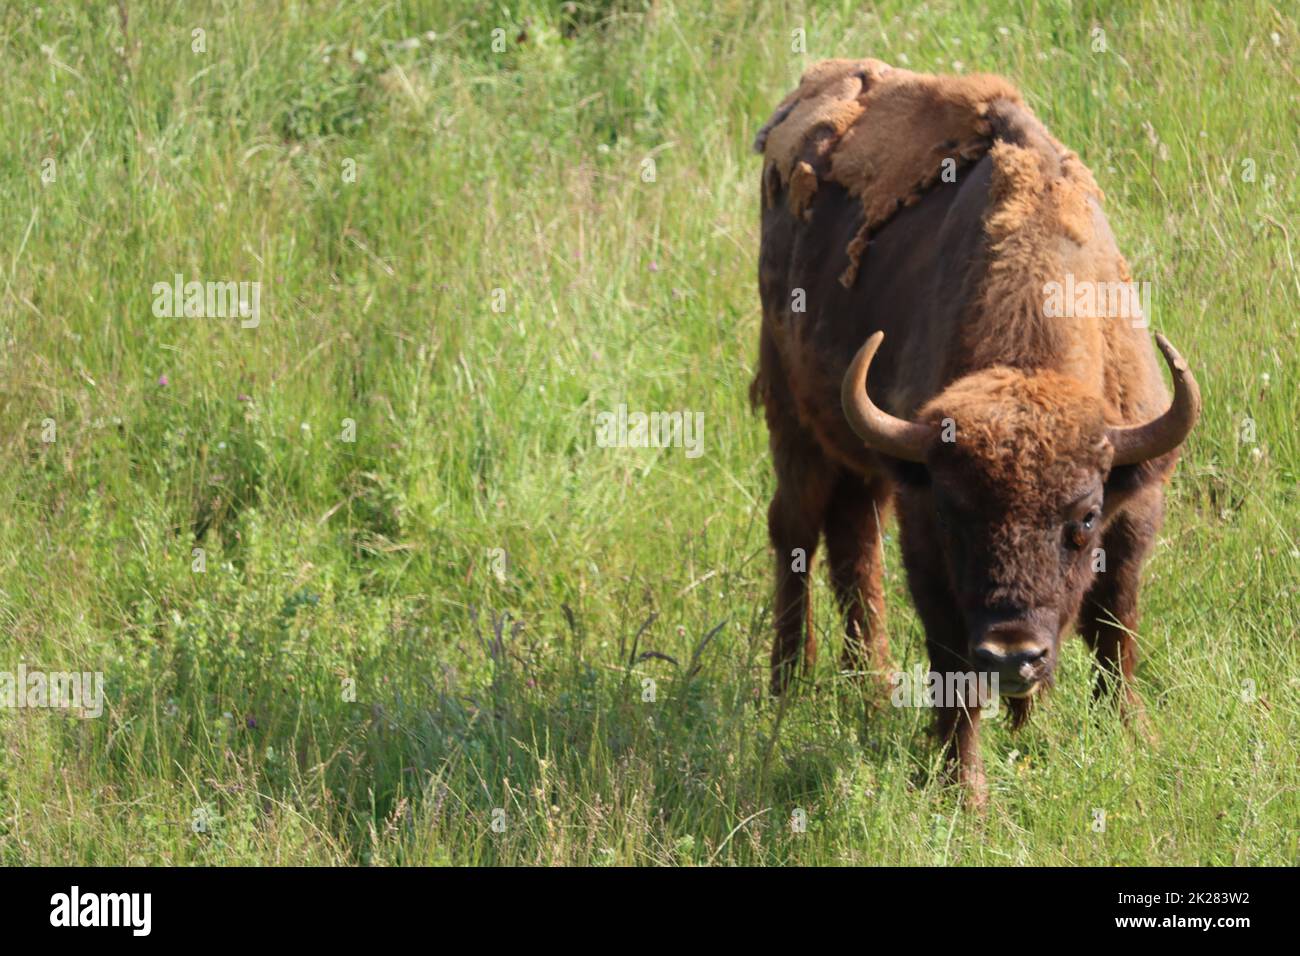 Schöne große Bisons gefährliche Hörner pflanzenfressenden Zoo Safari Tier Stockfoto